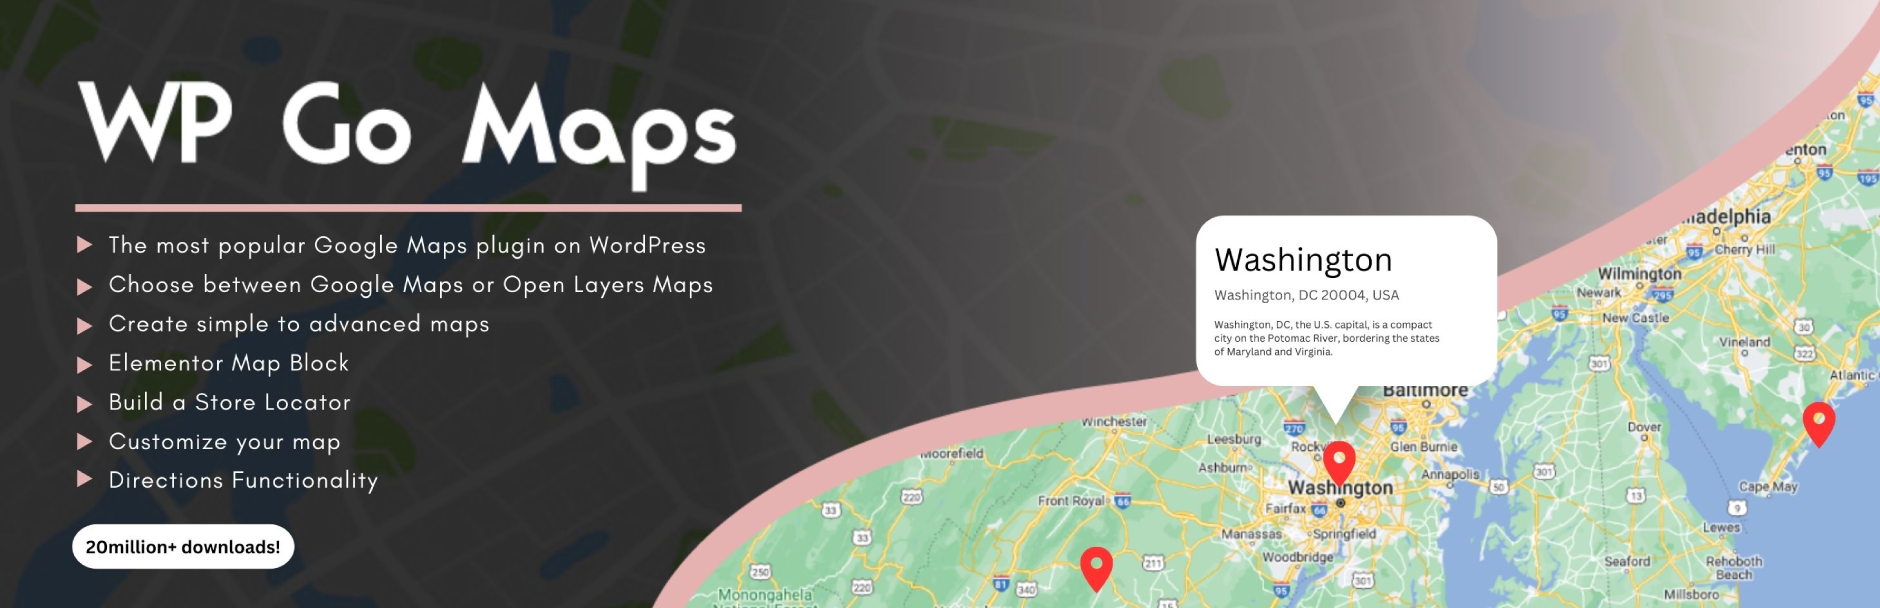 WP Go Maps (formerly WP Google Maps)